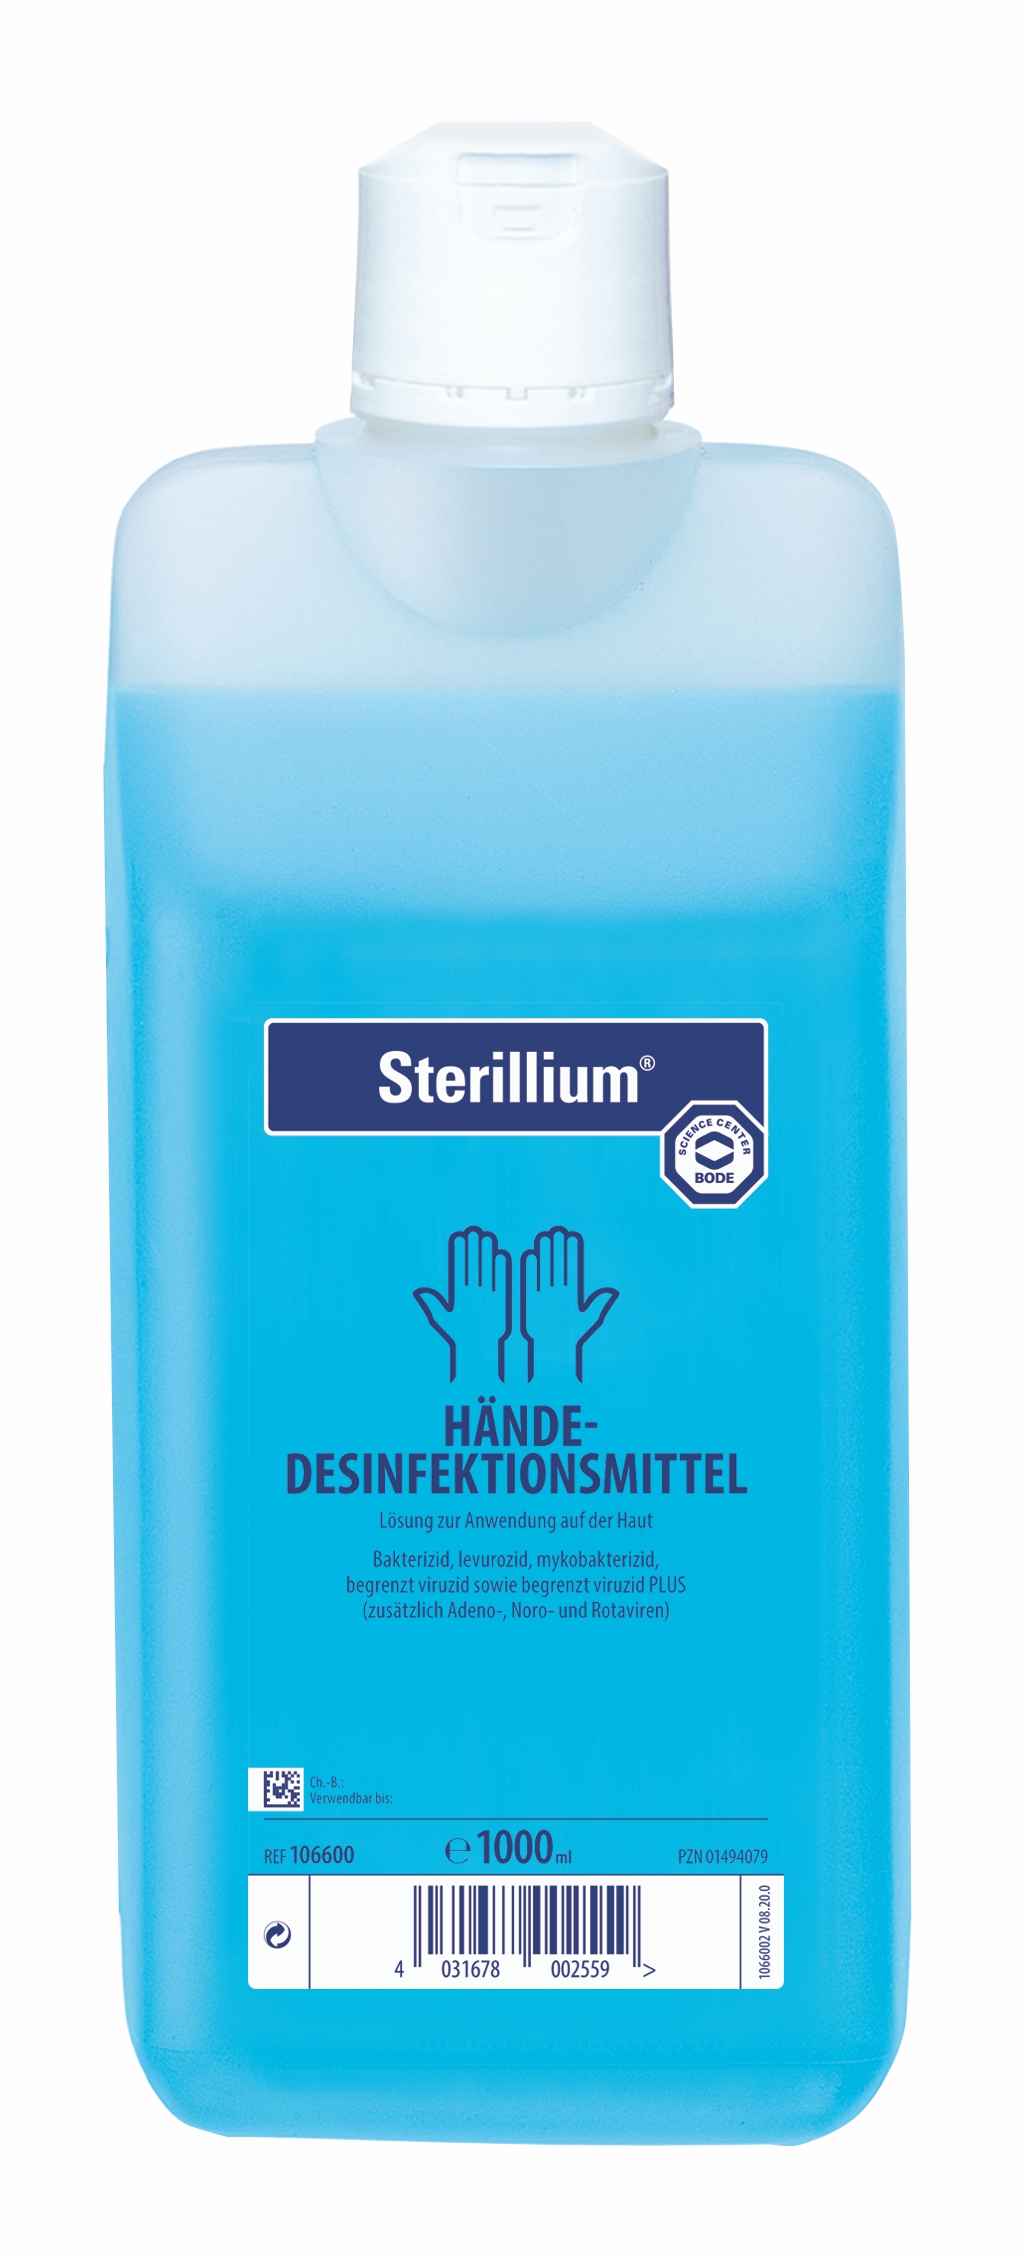 Bode Sterillium Hände-Desinfektionsmittel